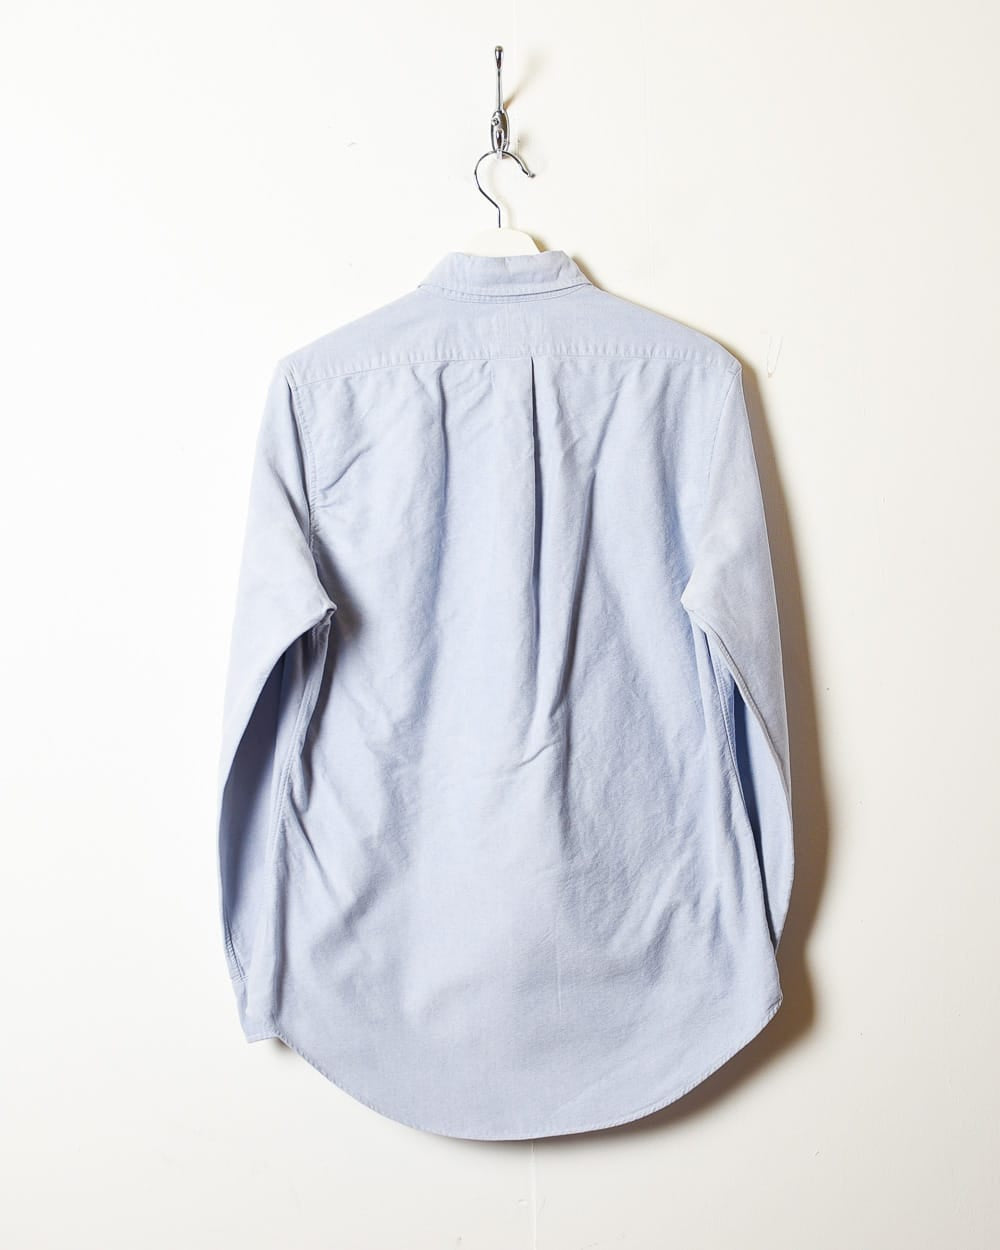 BabyBlue Polo Ralph Lauren Shirt - Small